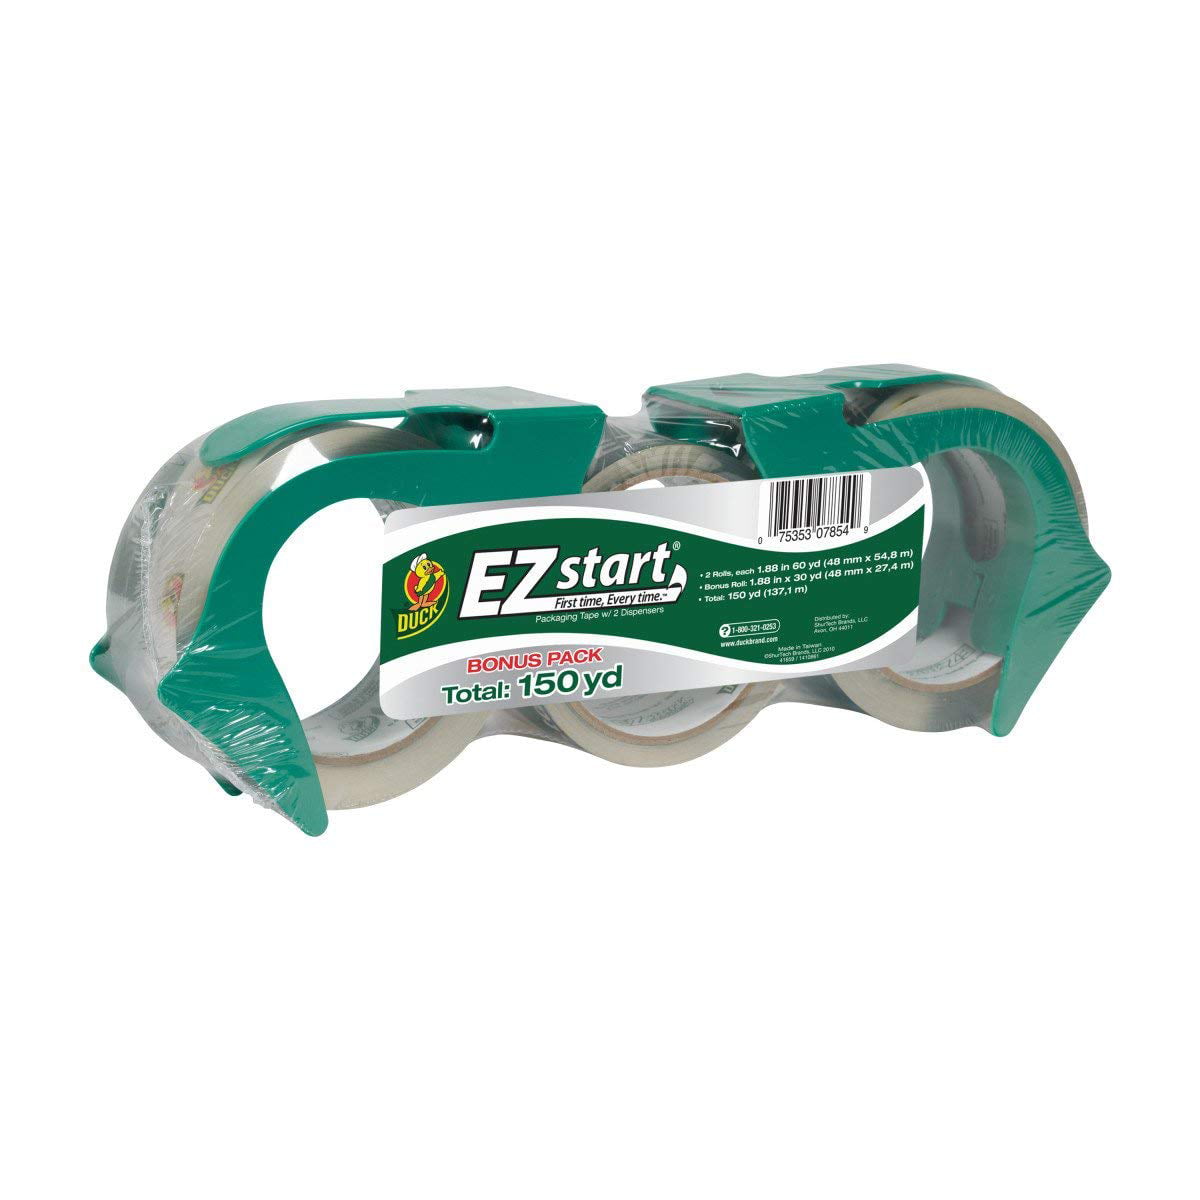 Duck Brand Brand EZ Start Packaging Tape 2 Pack 